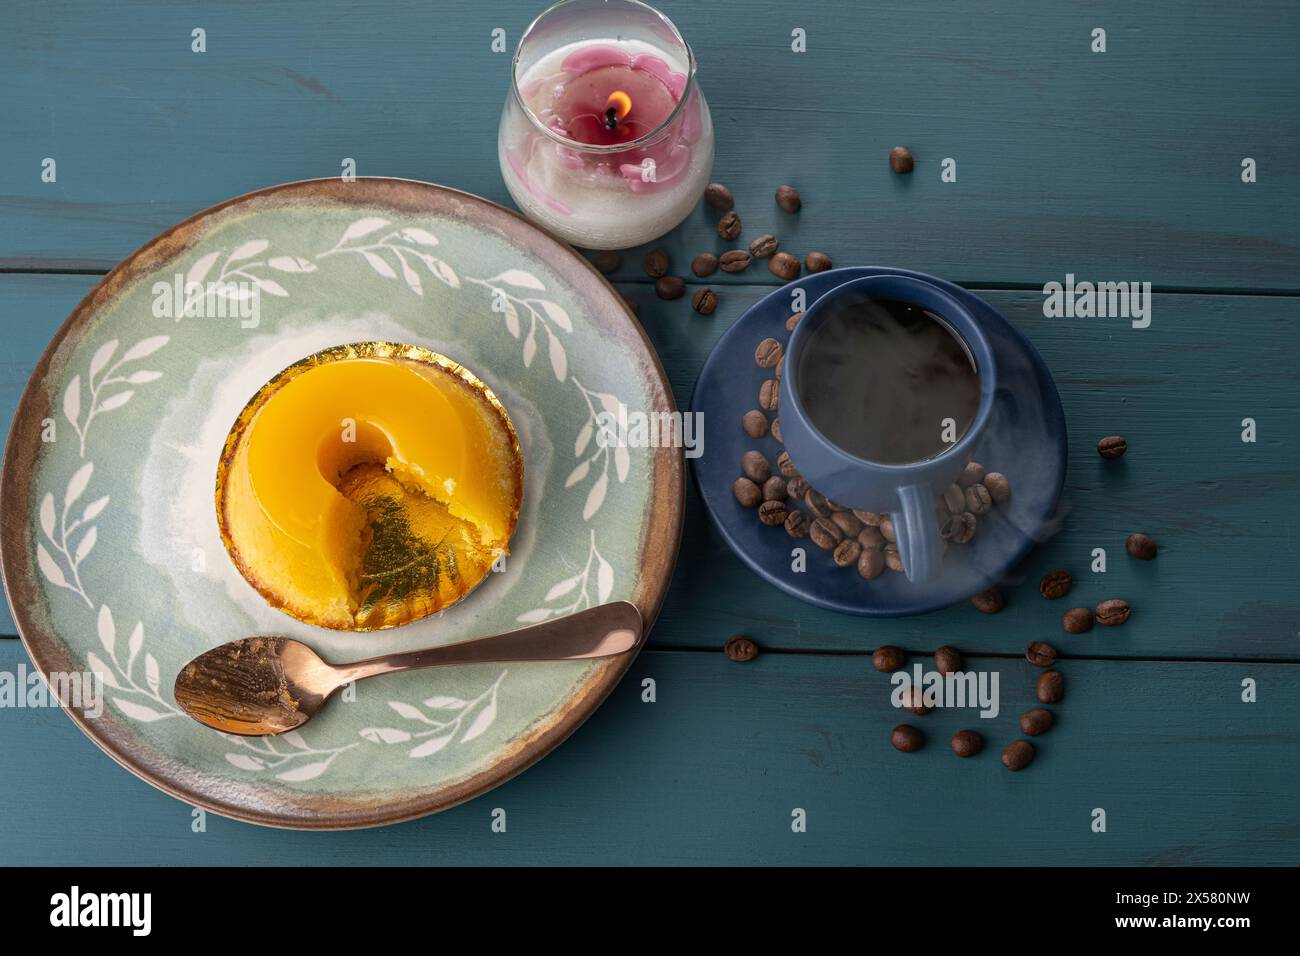 Petit quindim, sucré traditionnel brésilien, à côté d'une cuillère, tasse à café et une bougie 10. Banque D'Images